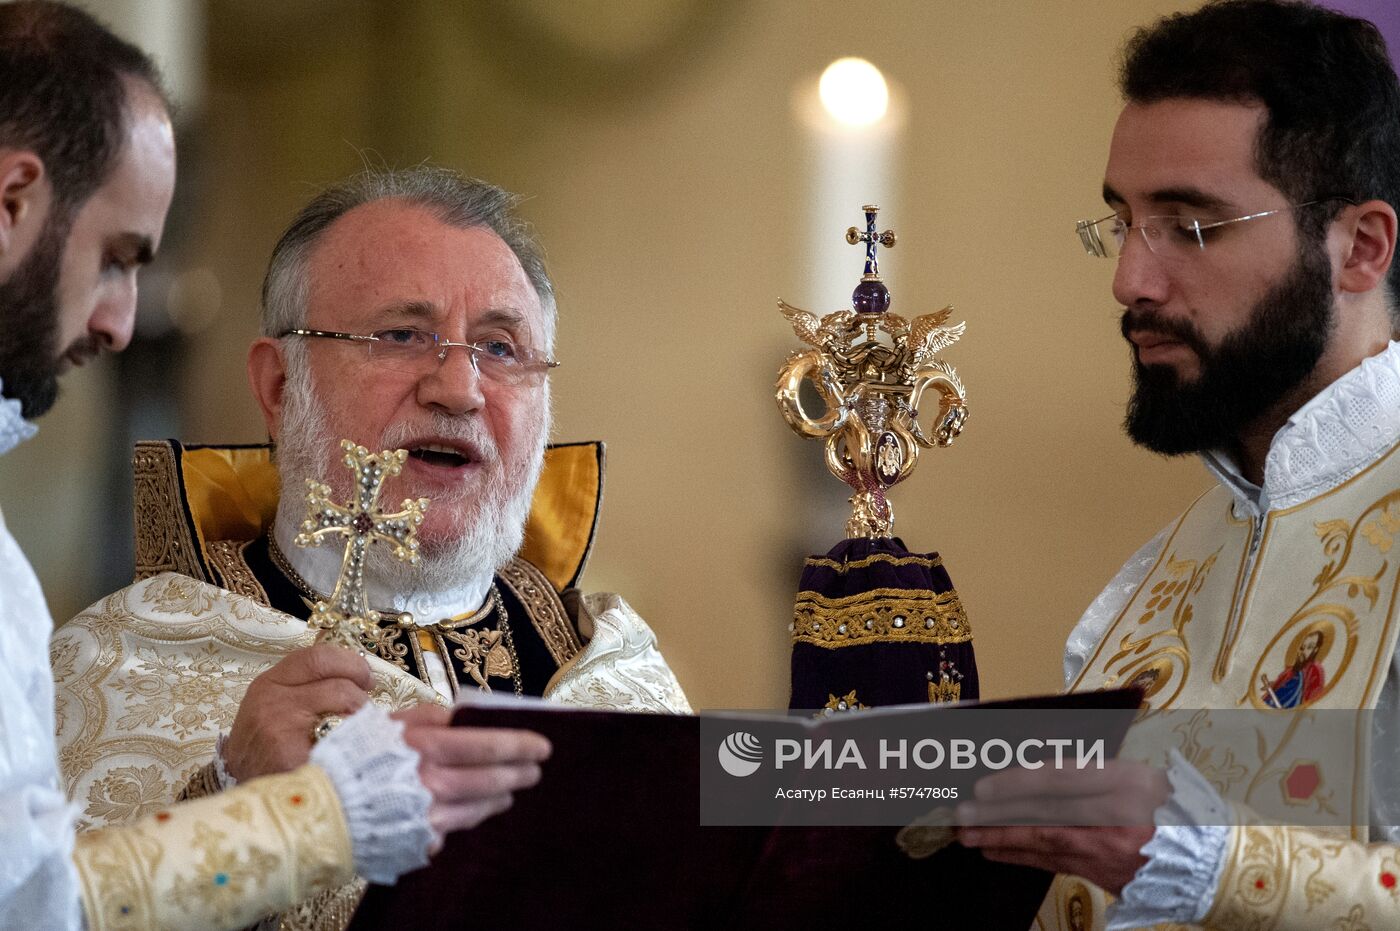 Празднование Рождества Христова в Армении